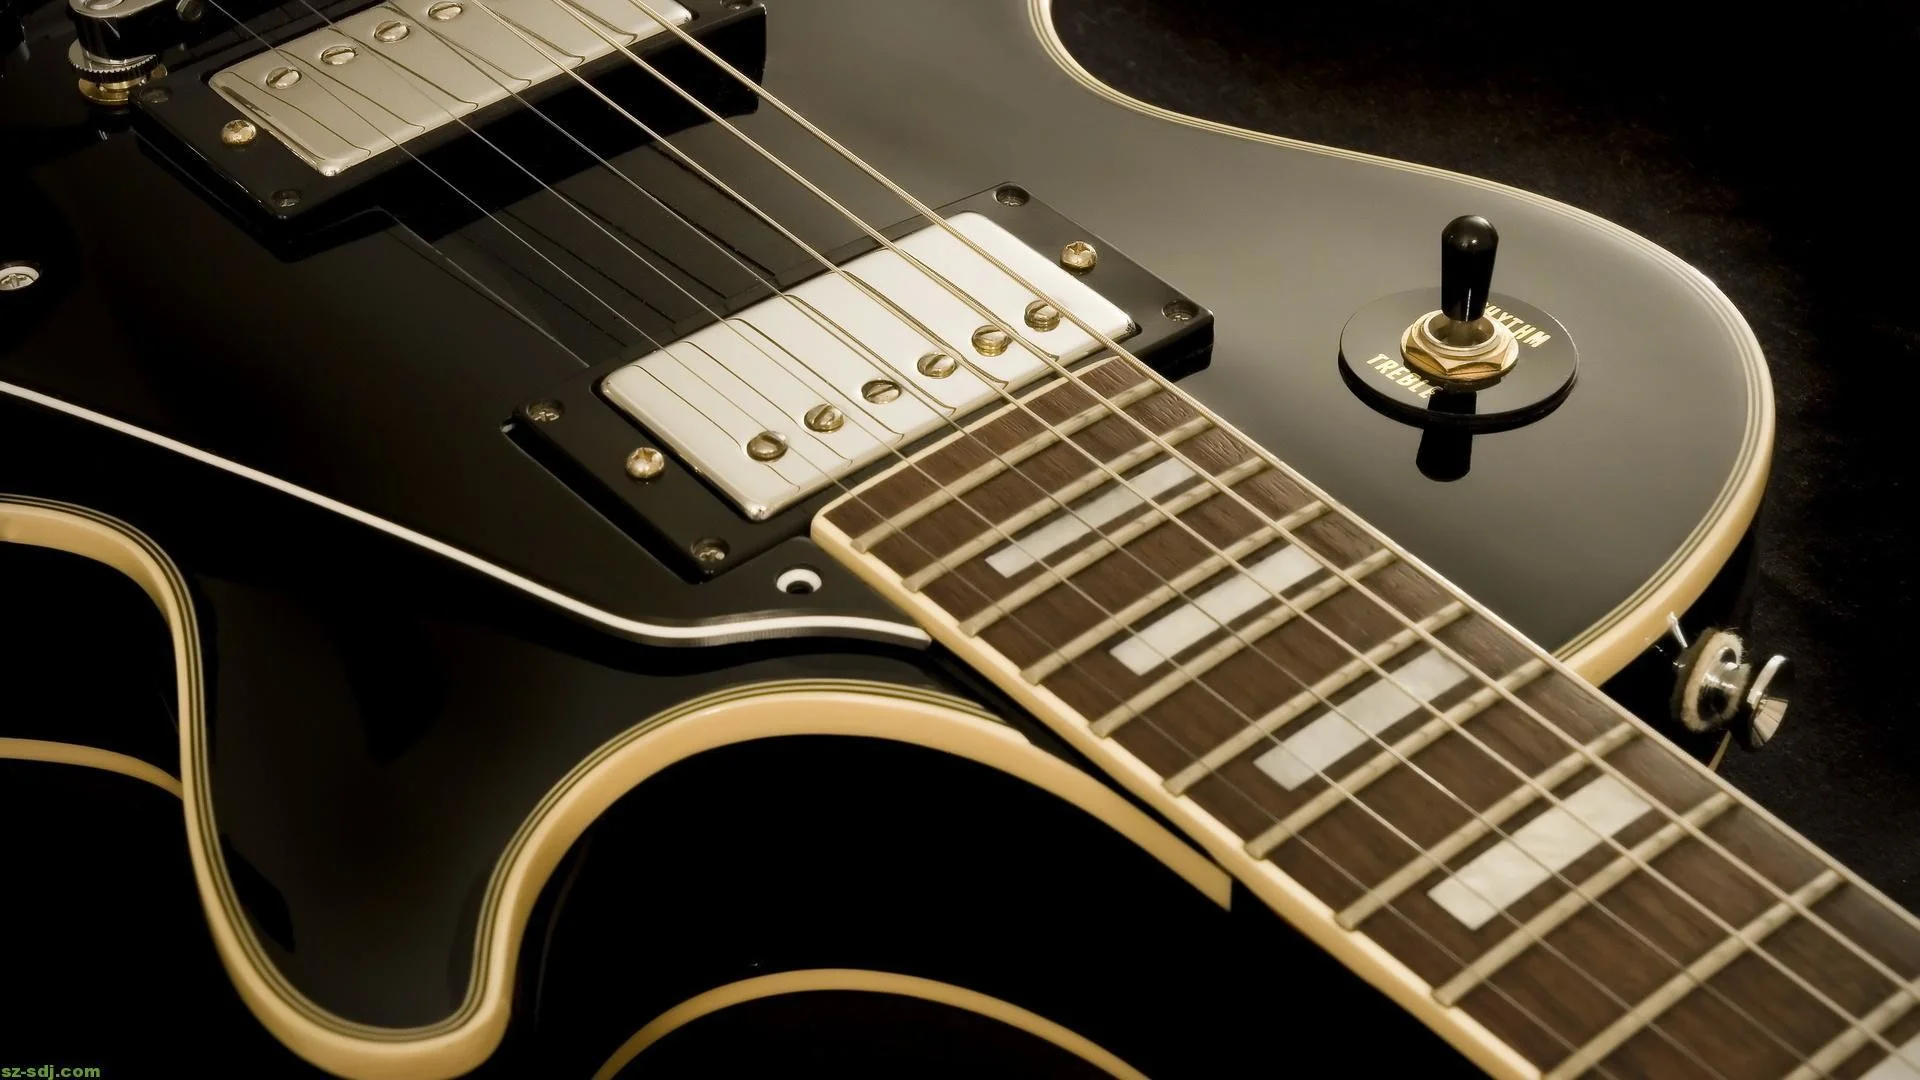 Fender guitar wallpaper hd – Fender guitars backgrounds – Fender